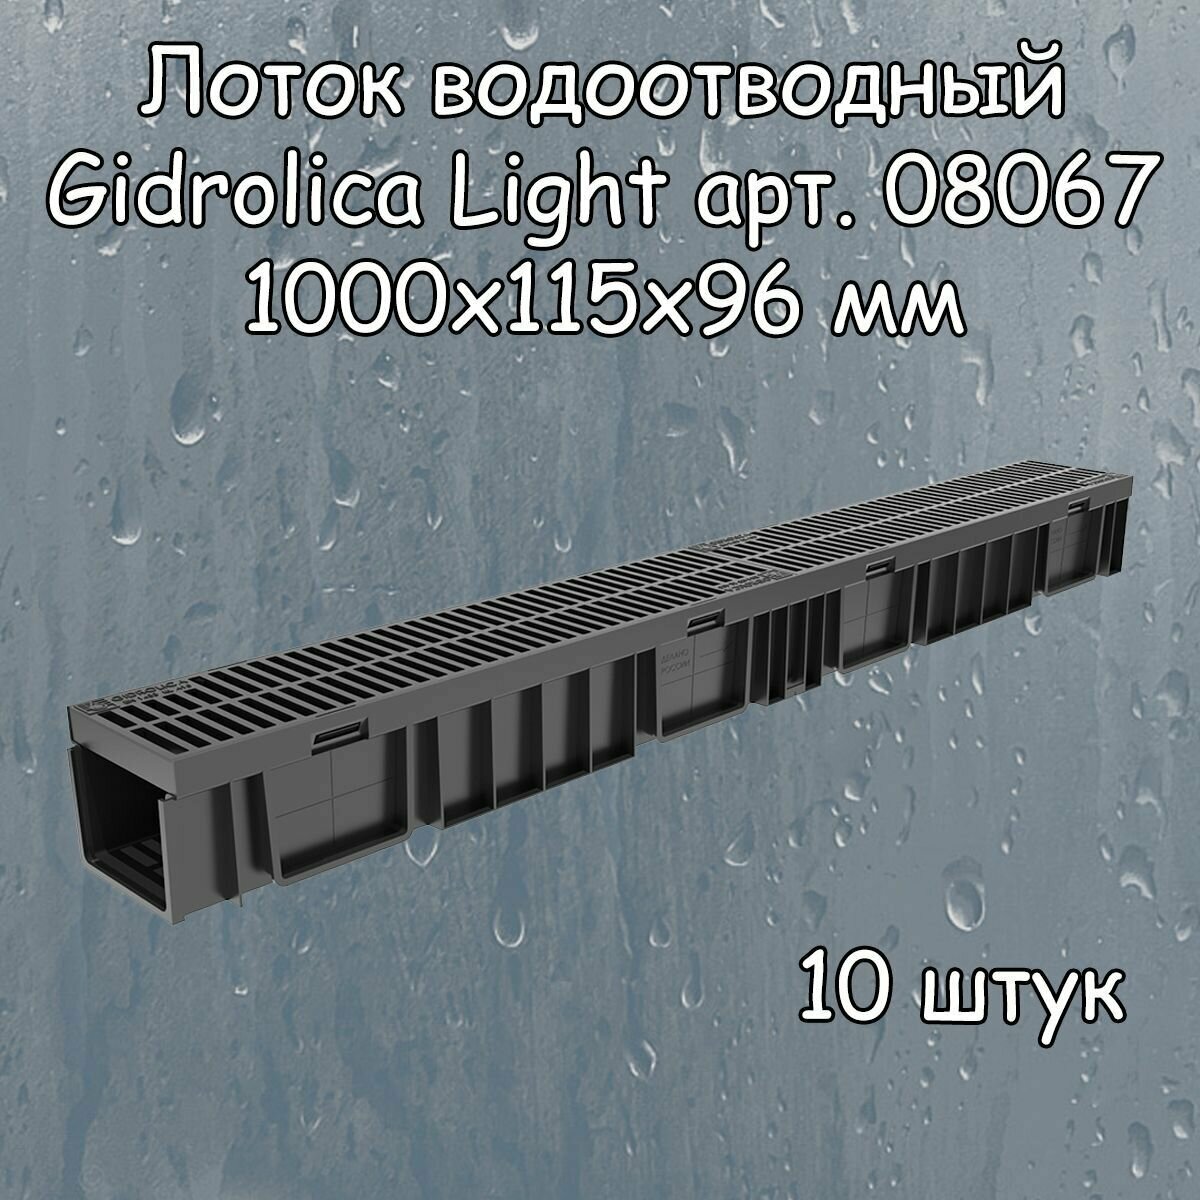 10 штук лоток водоотводный 1000х115х96 мм Gidrolica Light с решеткой пластиковой щелевой DN100 (А15), артикул 08067, черный